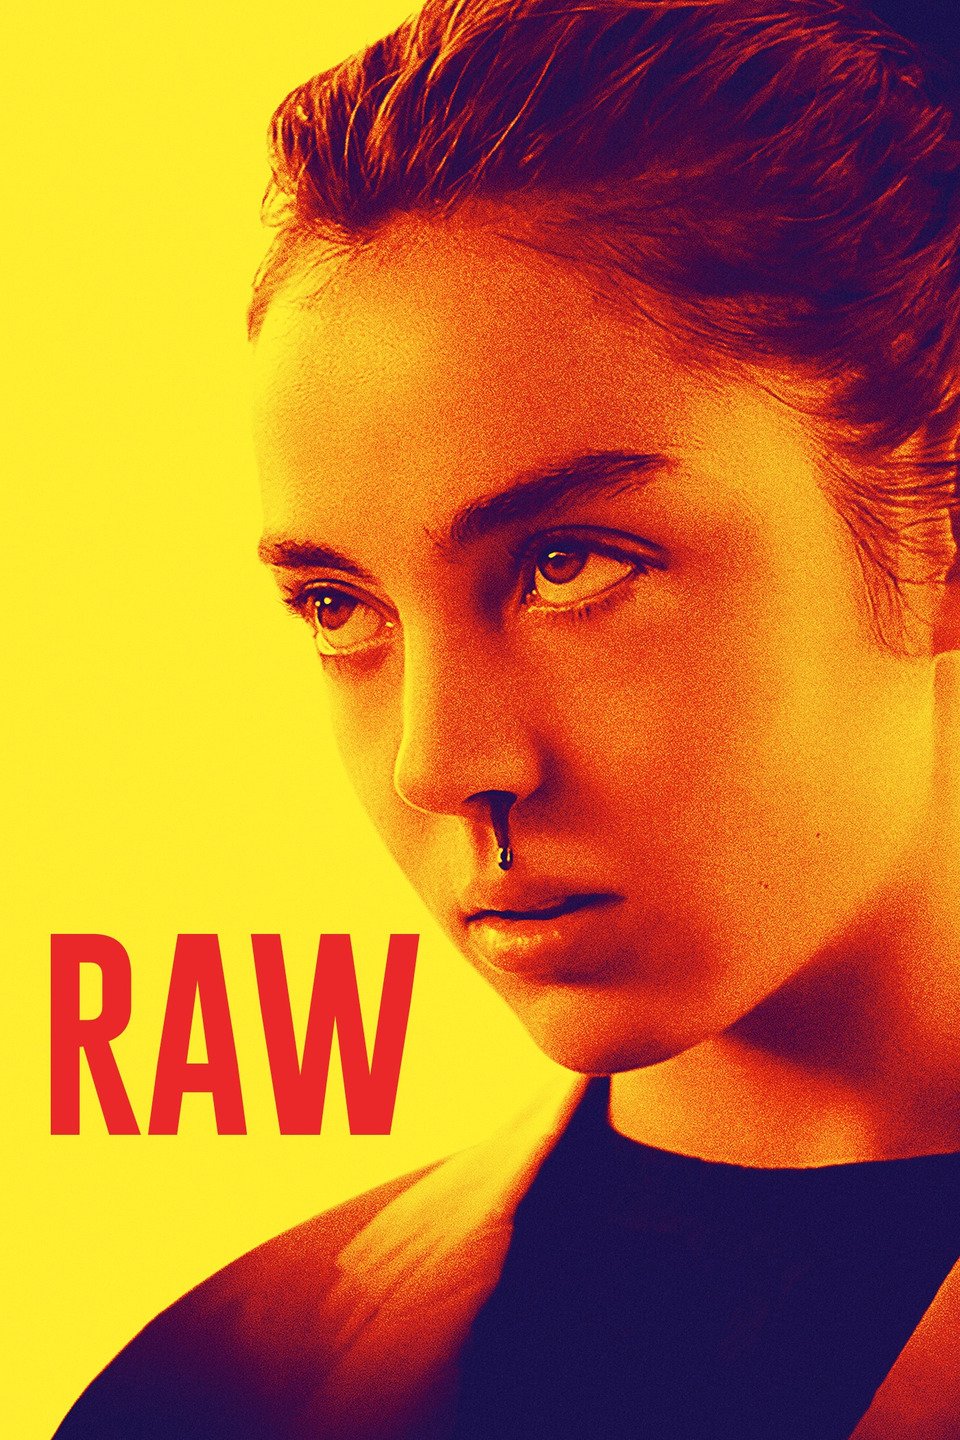 [ฝรั่ง] RAW (GRAVE) (2017) สวยกัดดิบ [1080p] [พากย์อังกฤษ 5.1] [Soundtrack บรรยายไทย] [เสียงอังกฤษ + ซับไทย] [ONE2UP]